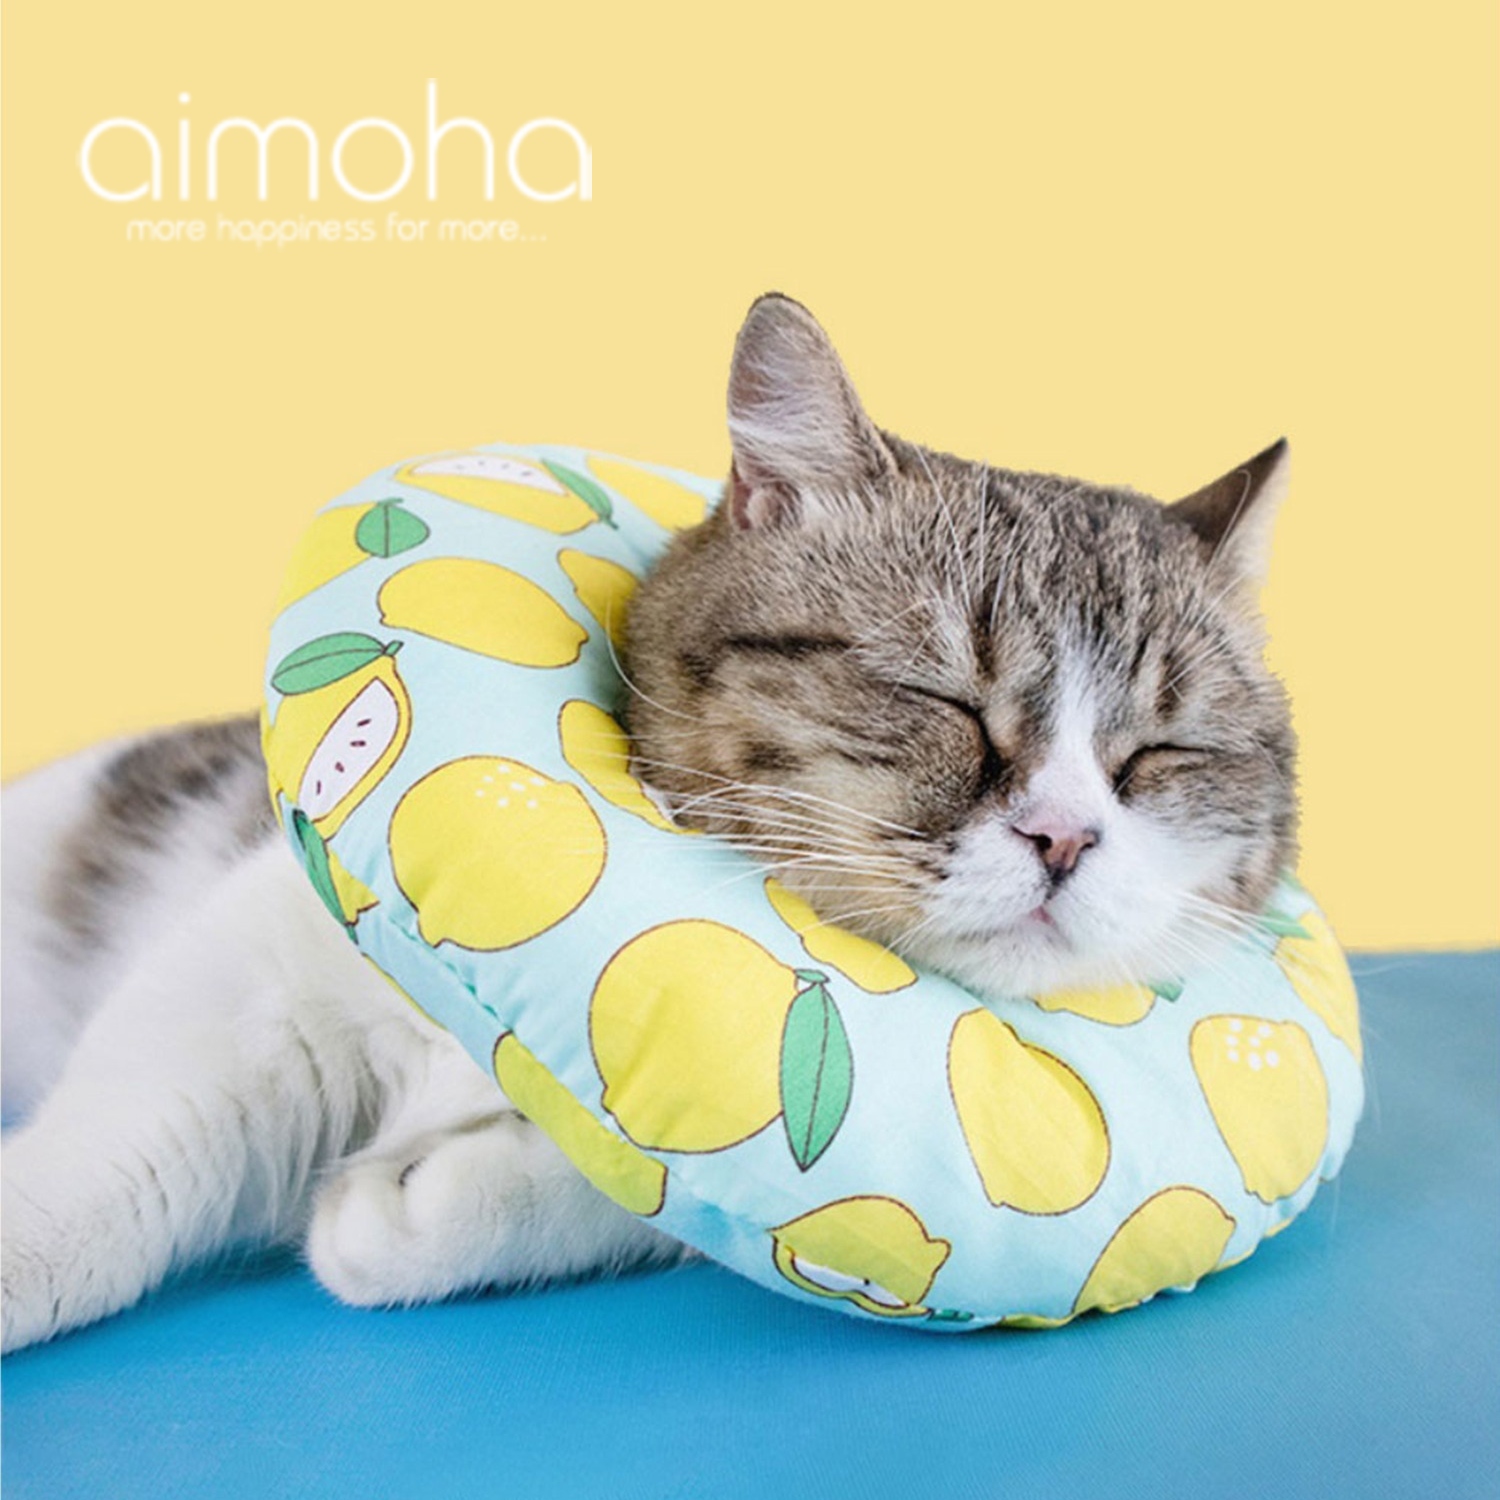 楽天市場 ネコ エリザベス カラー 犬 猫 ペット 円形 ドーナツ型 かわいい 映え ふわふわ 柔らかポリエステル 首 プロテクター 衣装 傷なめ防止 とっても可愛いペット用エリザべスカラー Aimoha